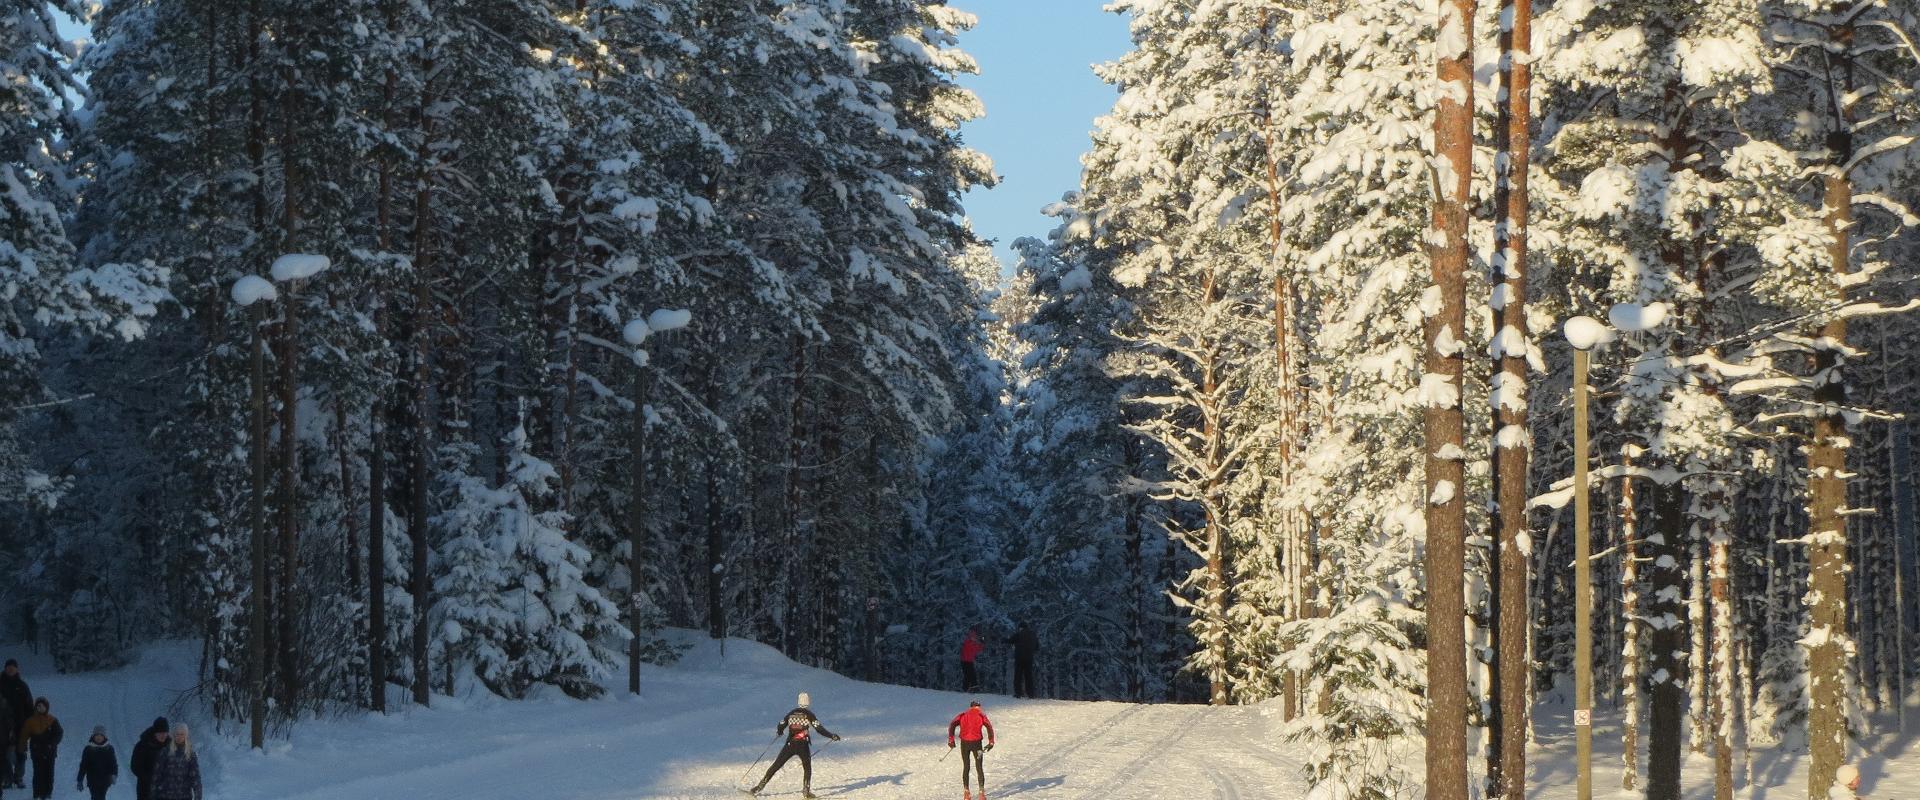 Alutaguse Puhke- ja Spordikeskus asub Kurtna järvestikus Pannjärve vahetus läheduses. Metsas on ette valmistatud 1, 2, 3, 5 ja 7,5 km pikkused rajad. 